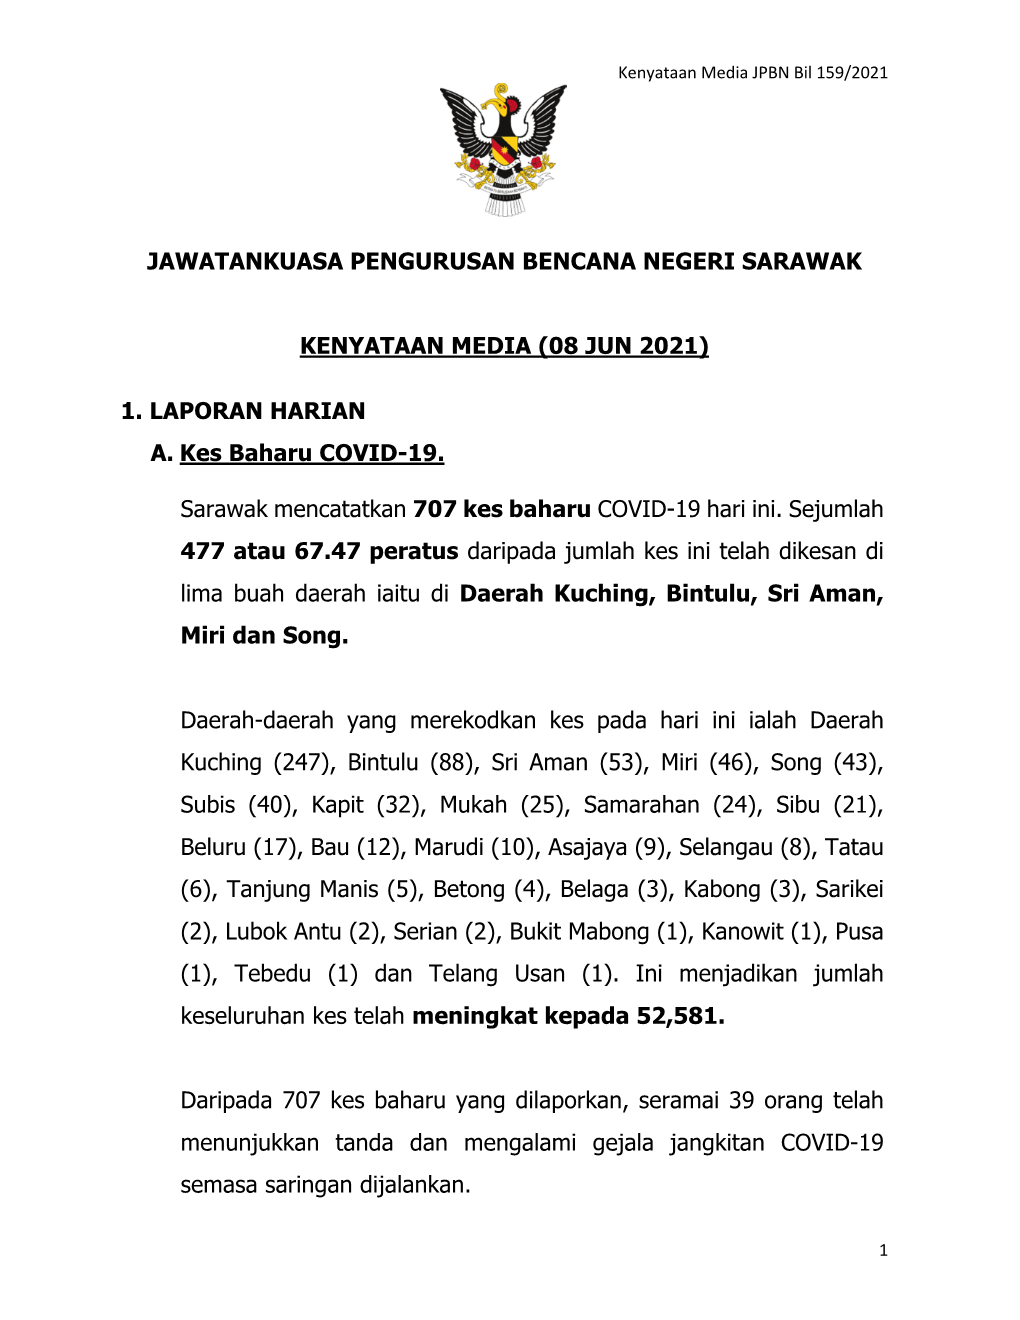 JAWATANKUASA PENGURUSAN BENCANA NEGERI SARAWAK KENYATAAN MEDIA (08 JUN 2021) 1. LAPORAN HARIAN A. Kes Baharu COVID-19. Sarawak M